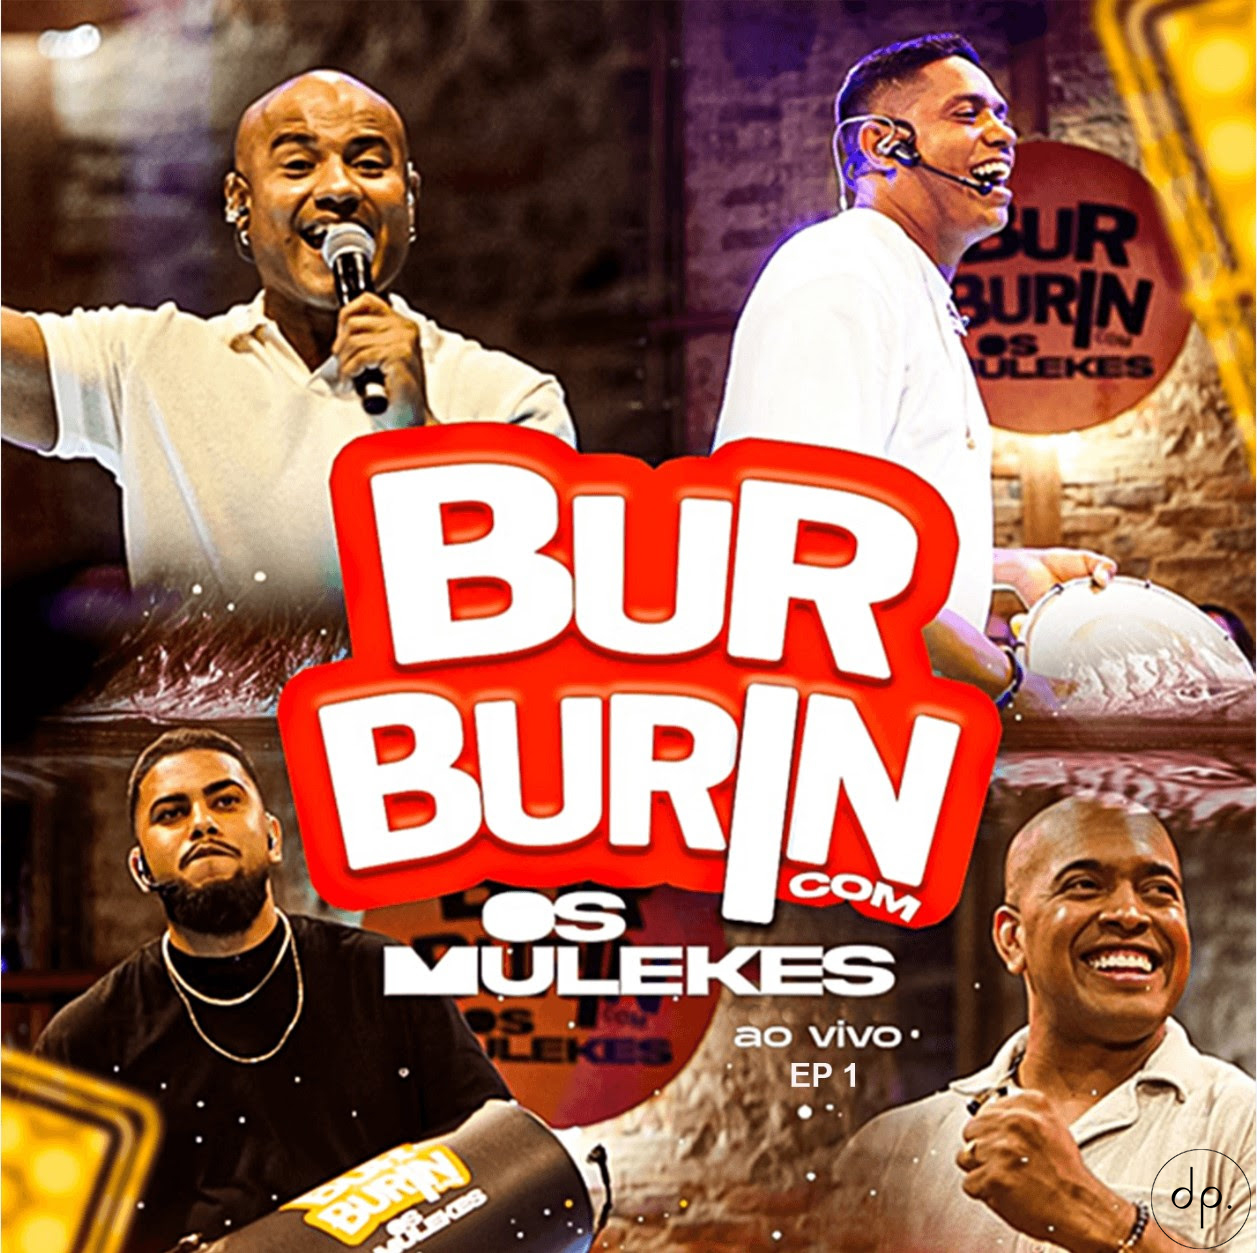 Os Mulekes - Burburin Com Os Mulekes (Ao Vivo) - EP1